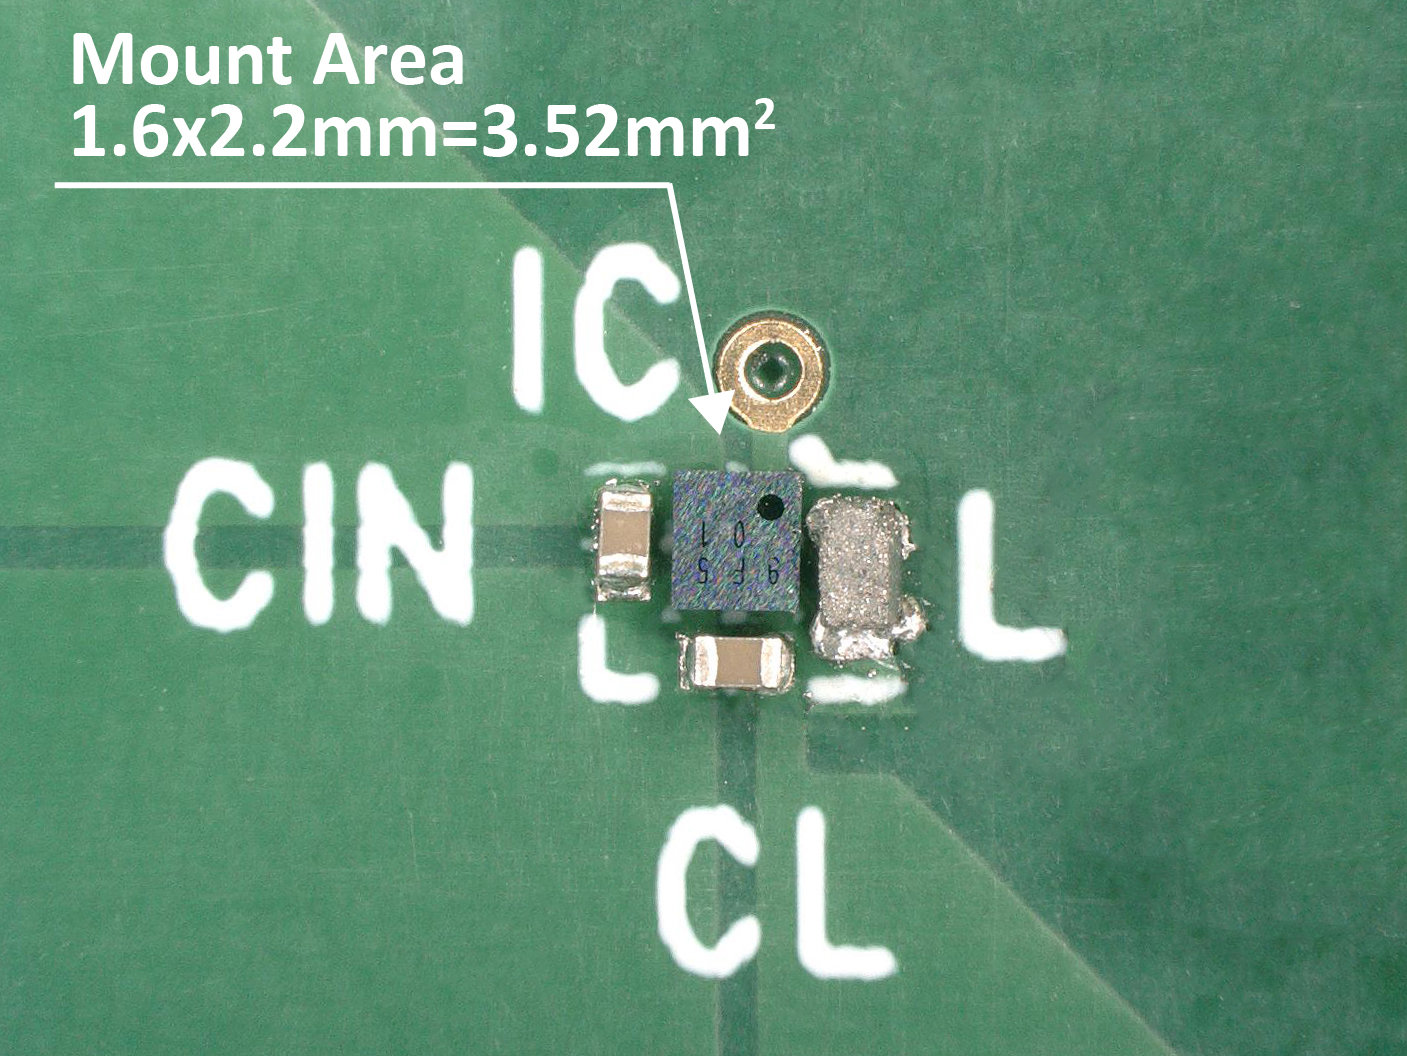 実装面積3.52mm2、「世界最小クラス」の600mA 降圧DC-DCコン：高速応答 